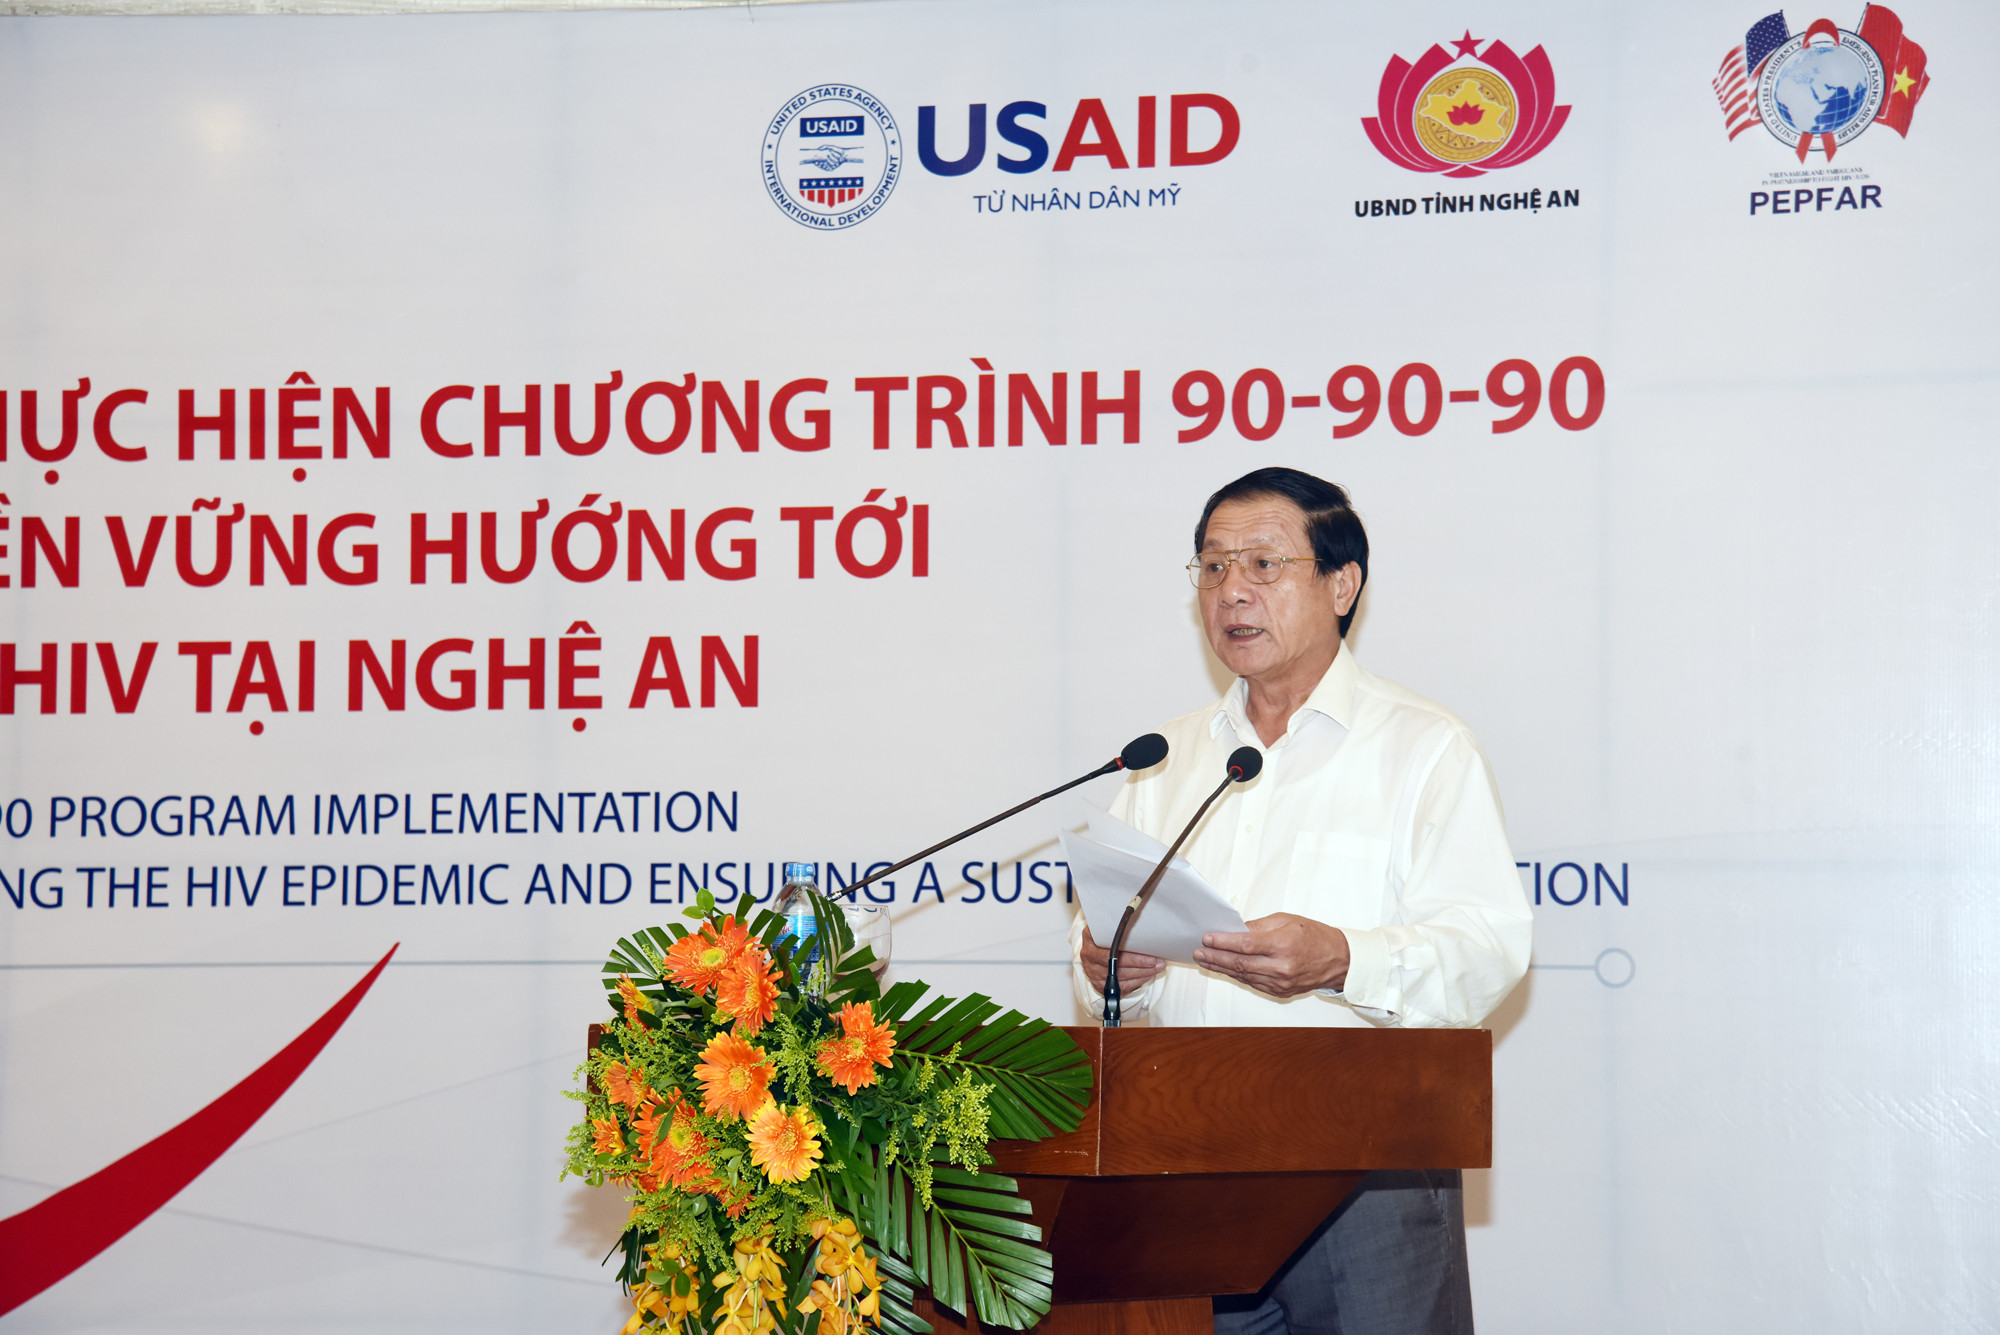 Đồng chí Lê Minh Thông cảm ơn sự quan tâm giúp đỡ của các tổ chức quốc tế đối với tỉnh Nghệ An trong công tác phòng chống HIV/ AIDS. Ảnh: Thành Chung